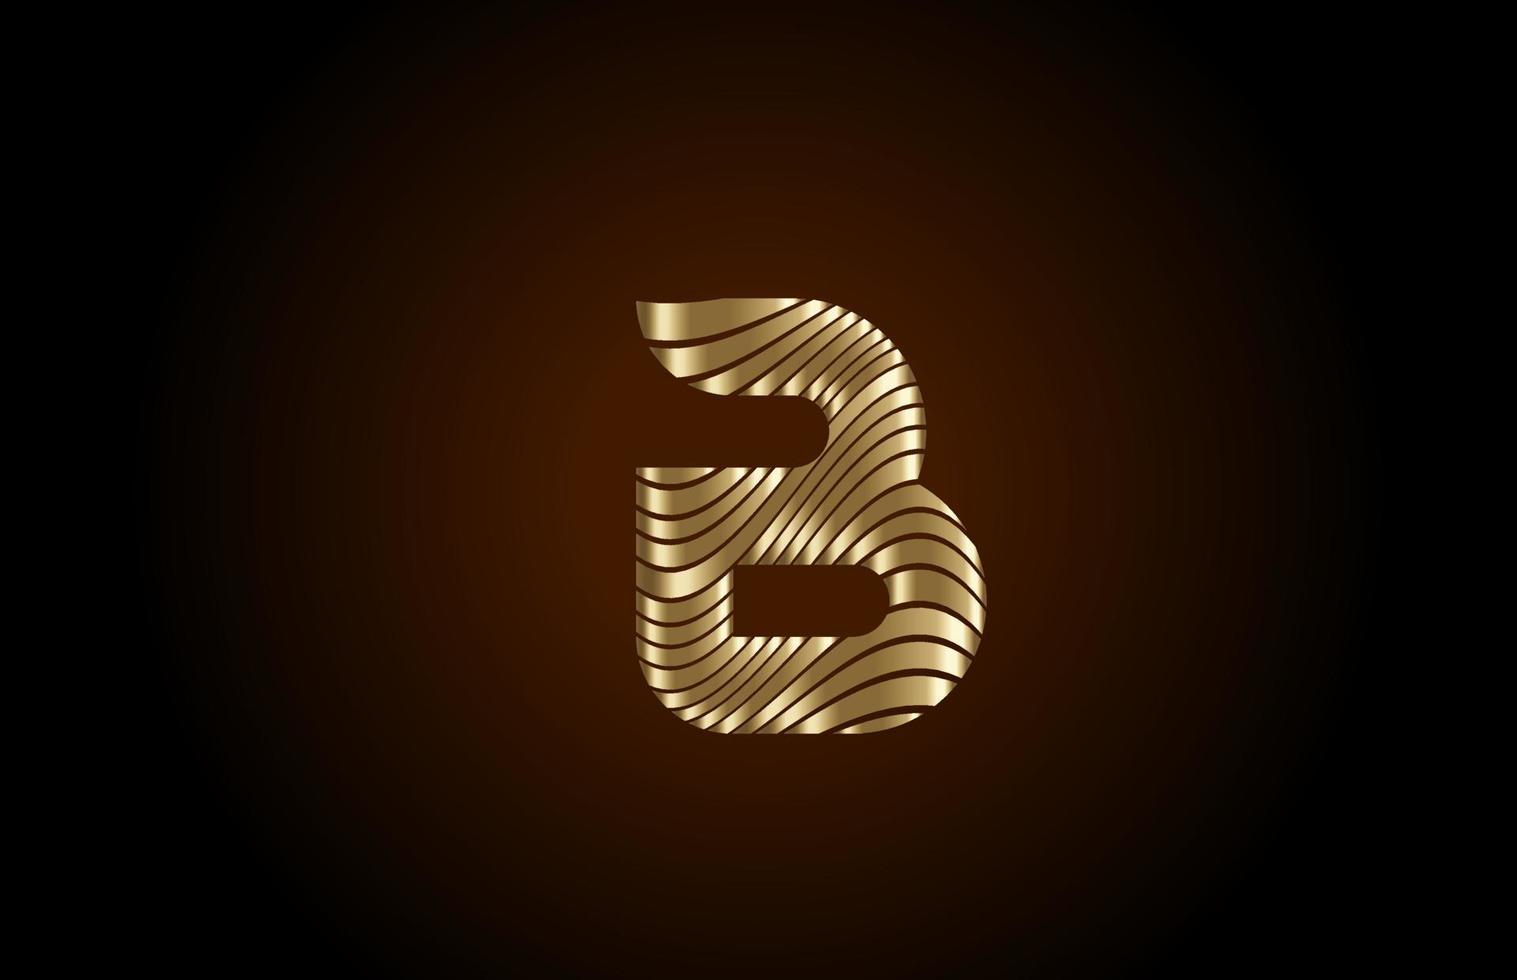 b gele alfabet letterpictogram logo voor bedrijf. metallic gouden lijnontwerp voor luxe identiteit vector